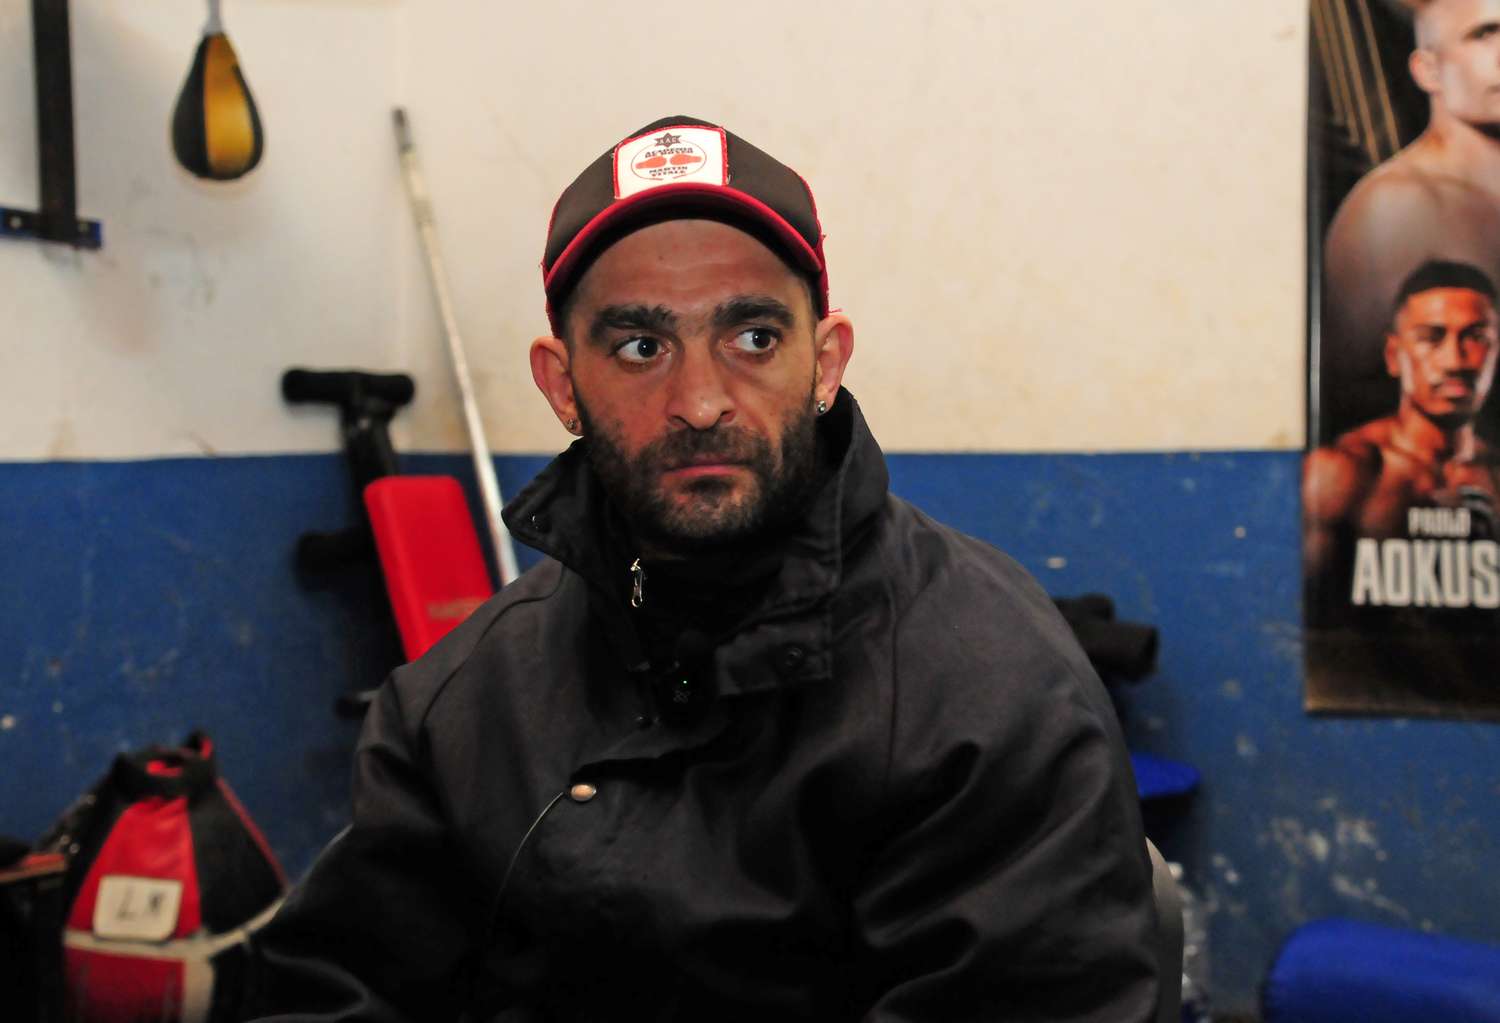 El rival de Rueda sufrió una fractura y canceló la pelea en Abu Dabi